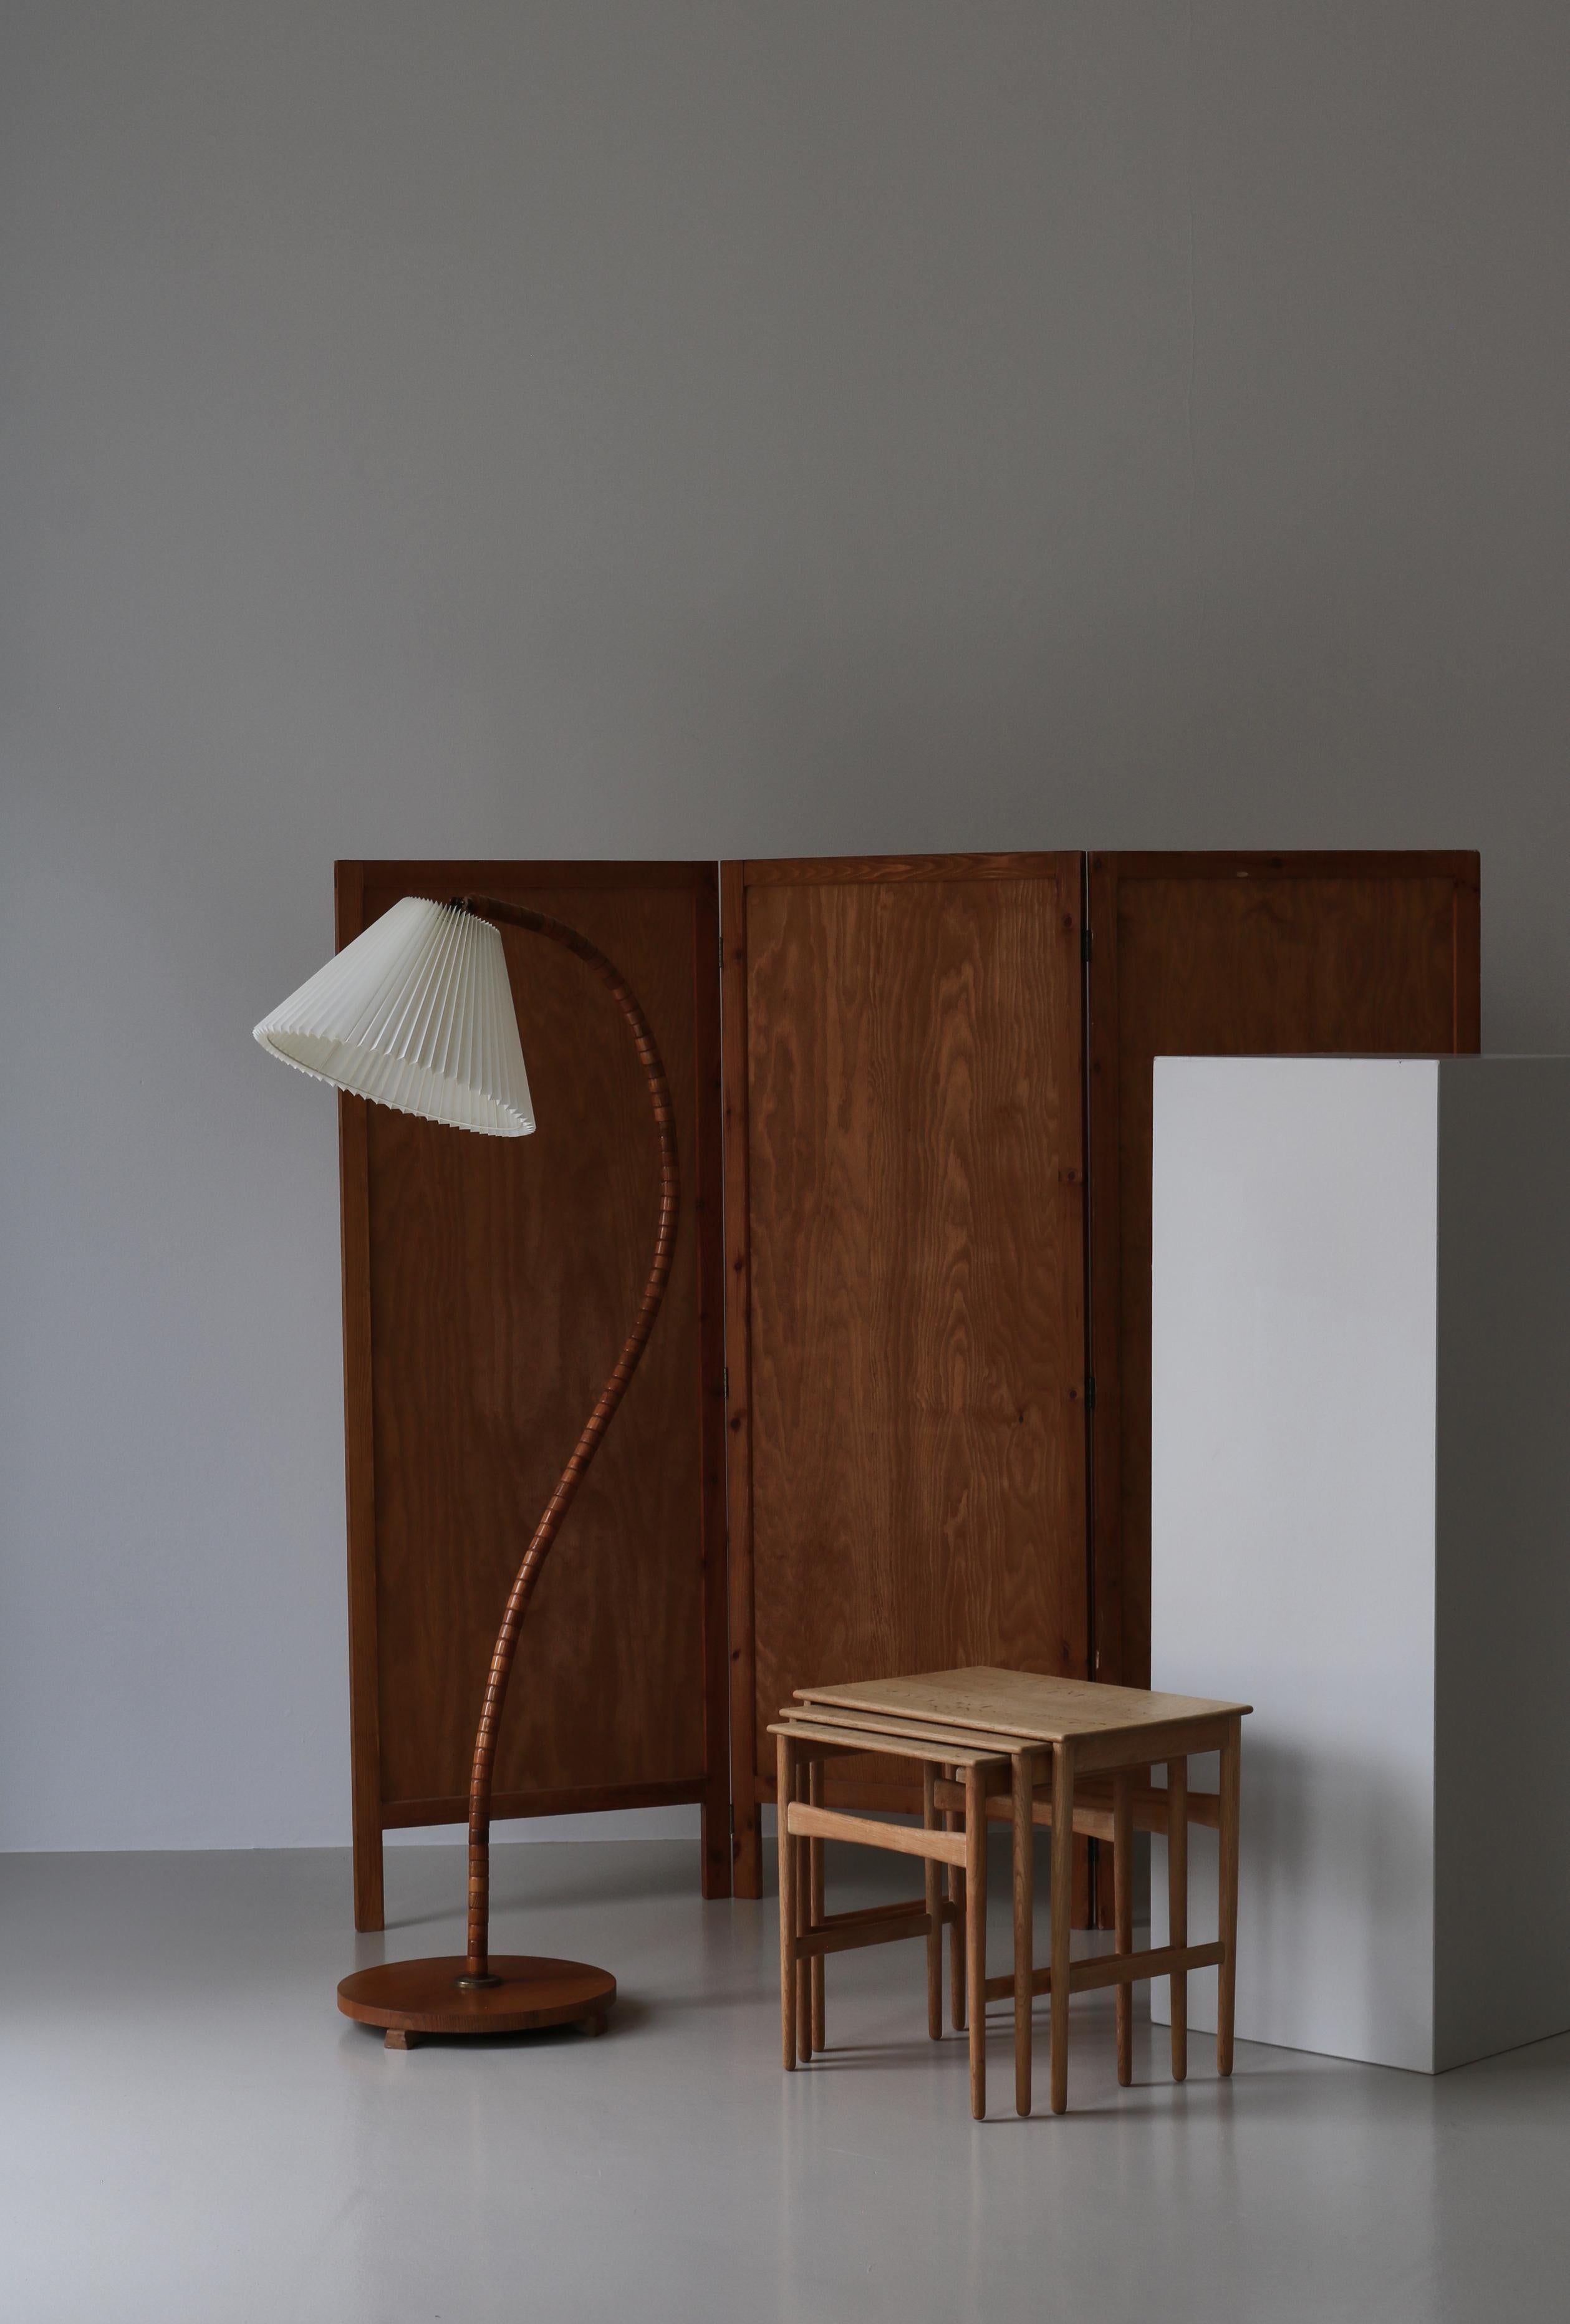 Wunderschönes minimalistisches Design des dänischen Designers Hans J. Wegner aus massivem skandinavischem Eichenholz. Dieser ikonische Satz von Tischen des Modells AT-40 wurde in den 1960er Jahren in der Tischlerei Andreas Tuck in Odense hergestellt